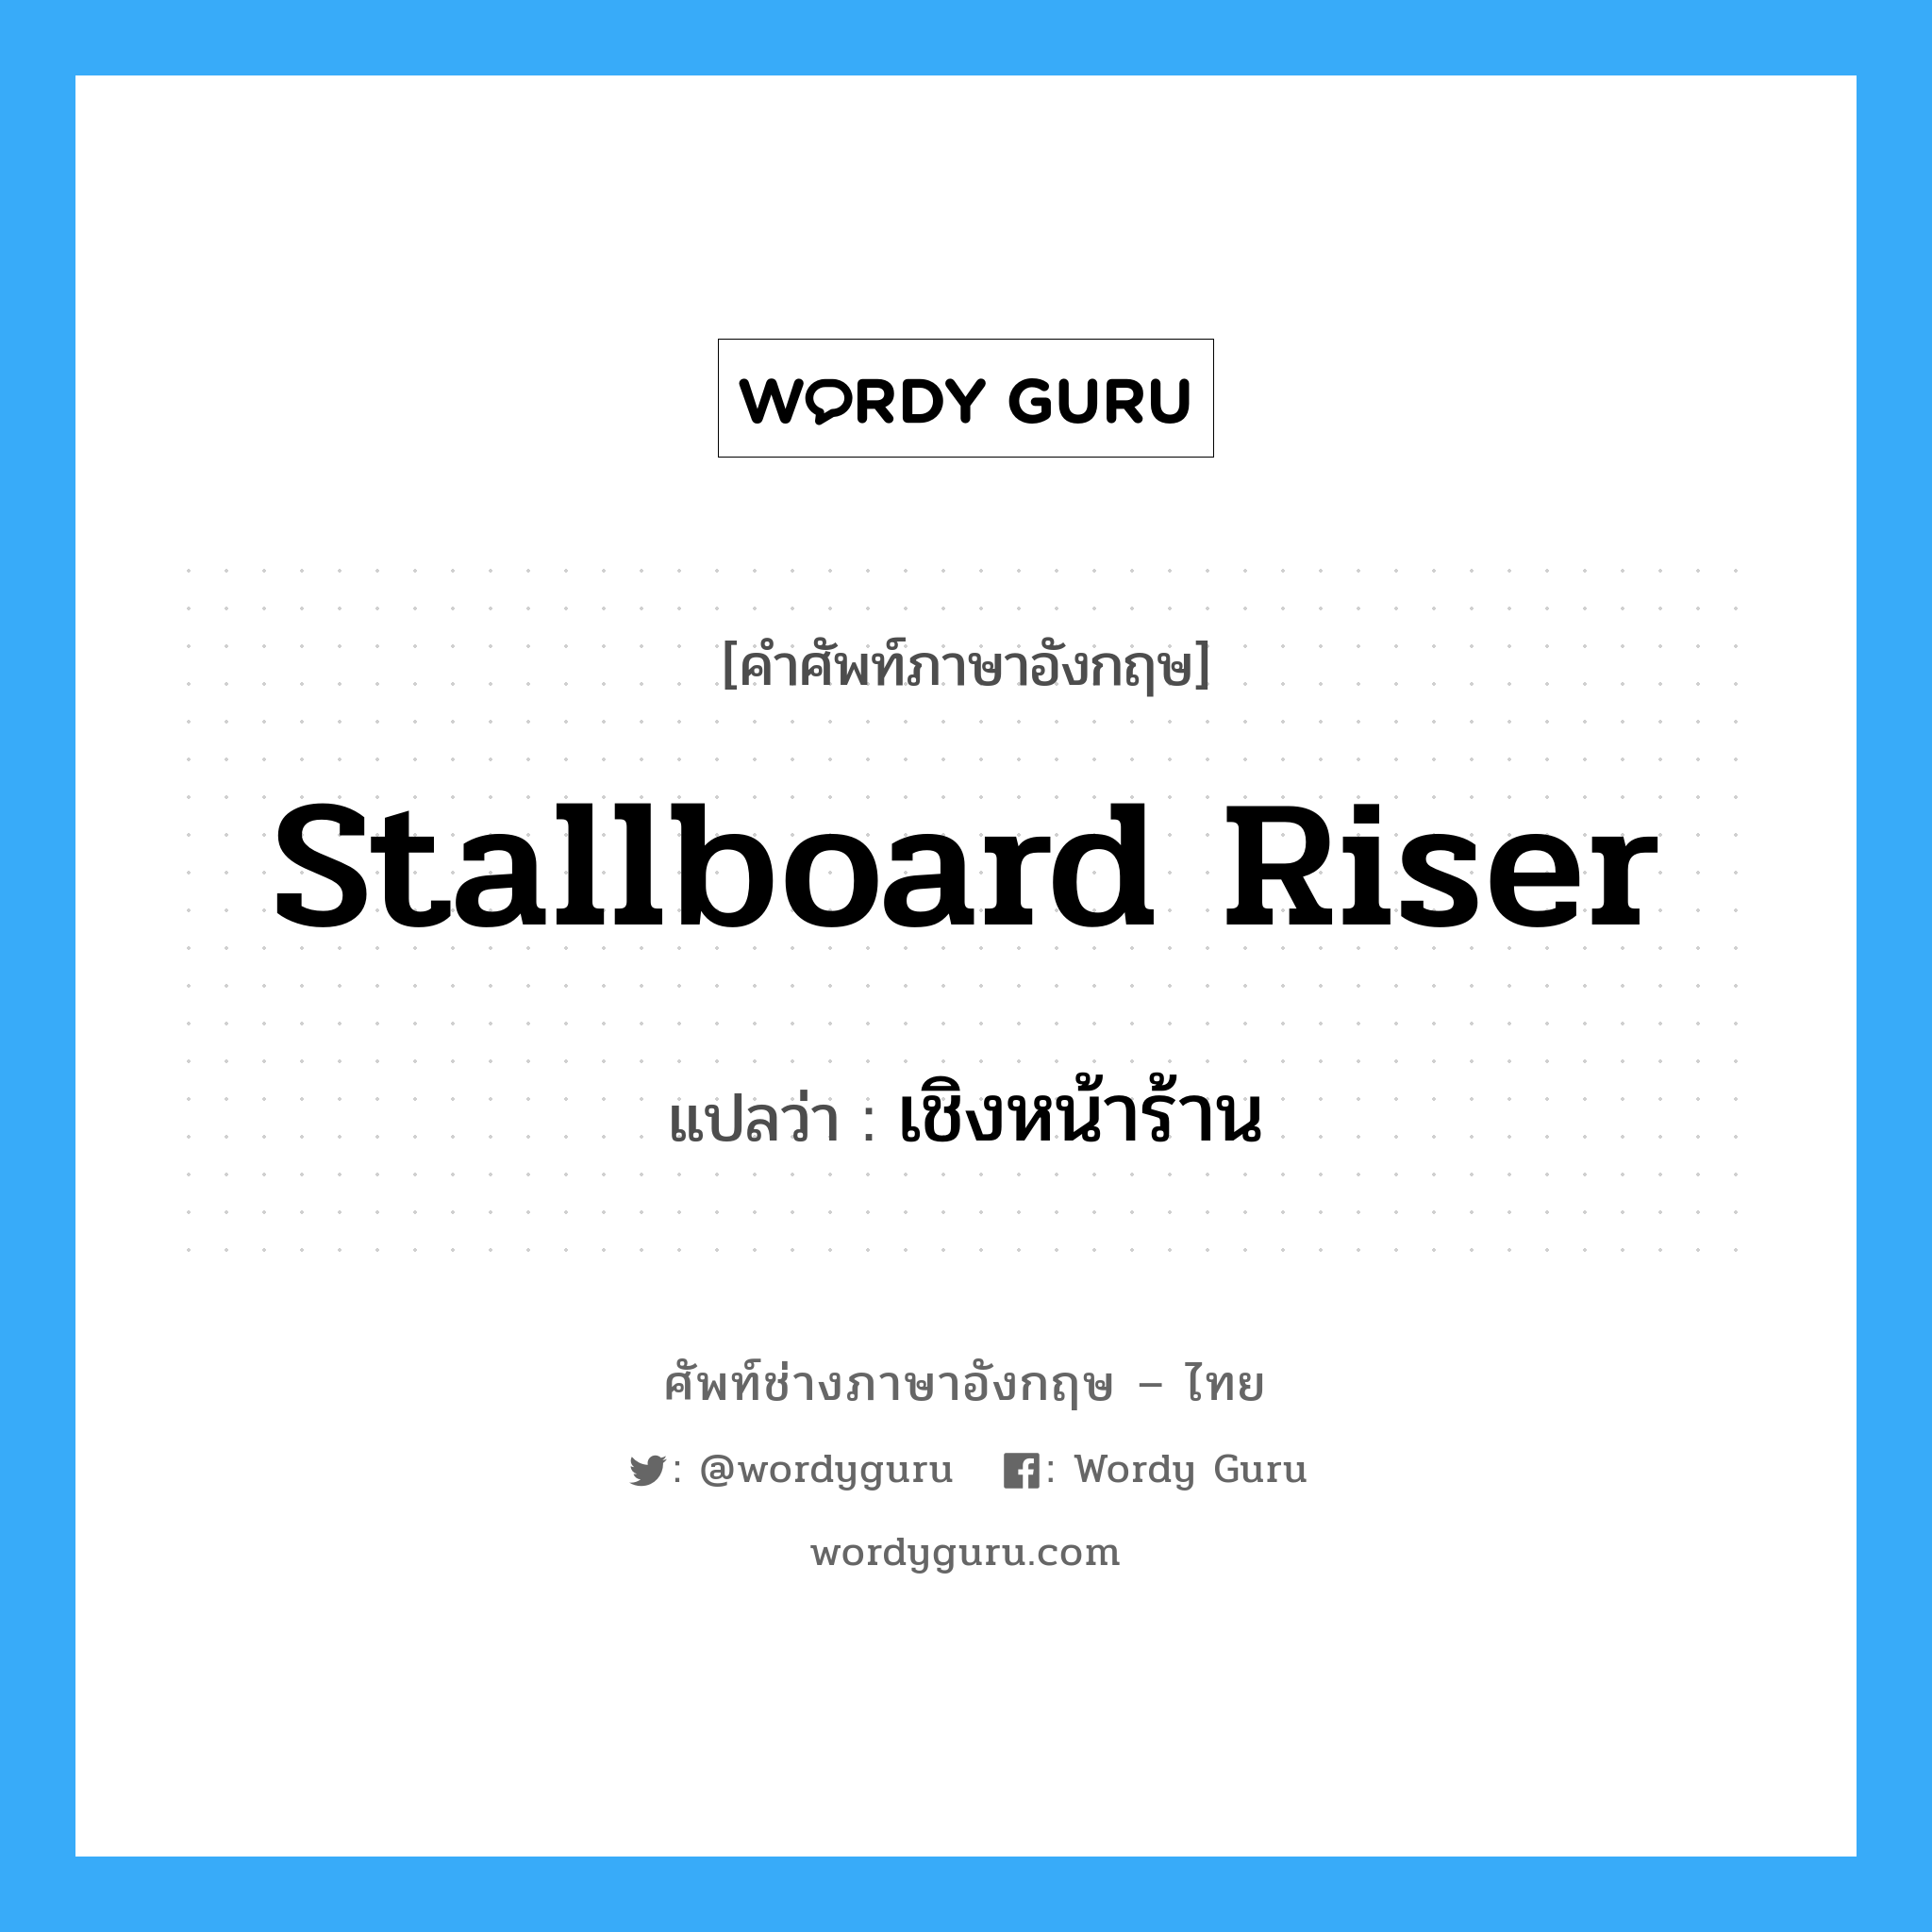 stallboard riser แปลว่า?, คำศัพท์ช่างภาษาอังกฤษ - ไทย stallboard riser คำศัพท์ภาษาอังกฤษ stallboard riser แปลว่า เชิงหน้าร้าน